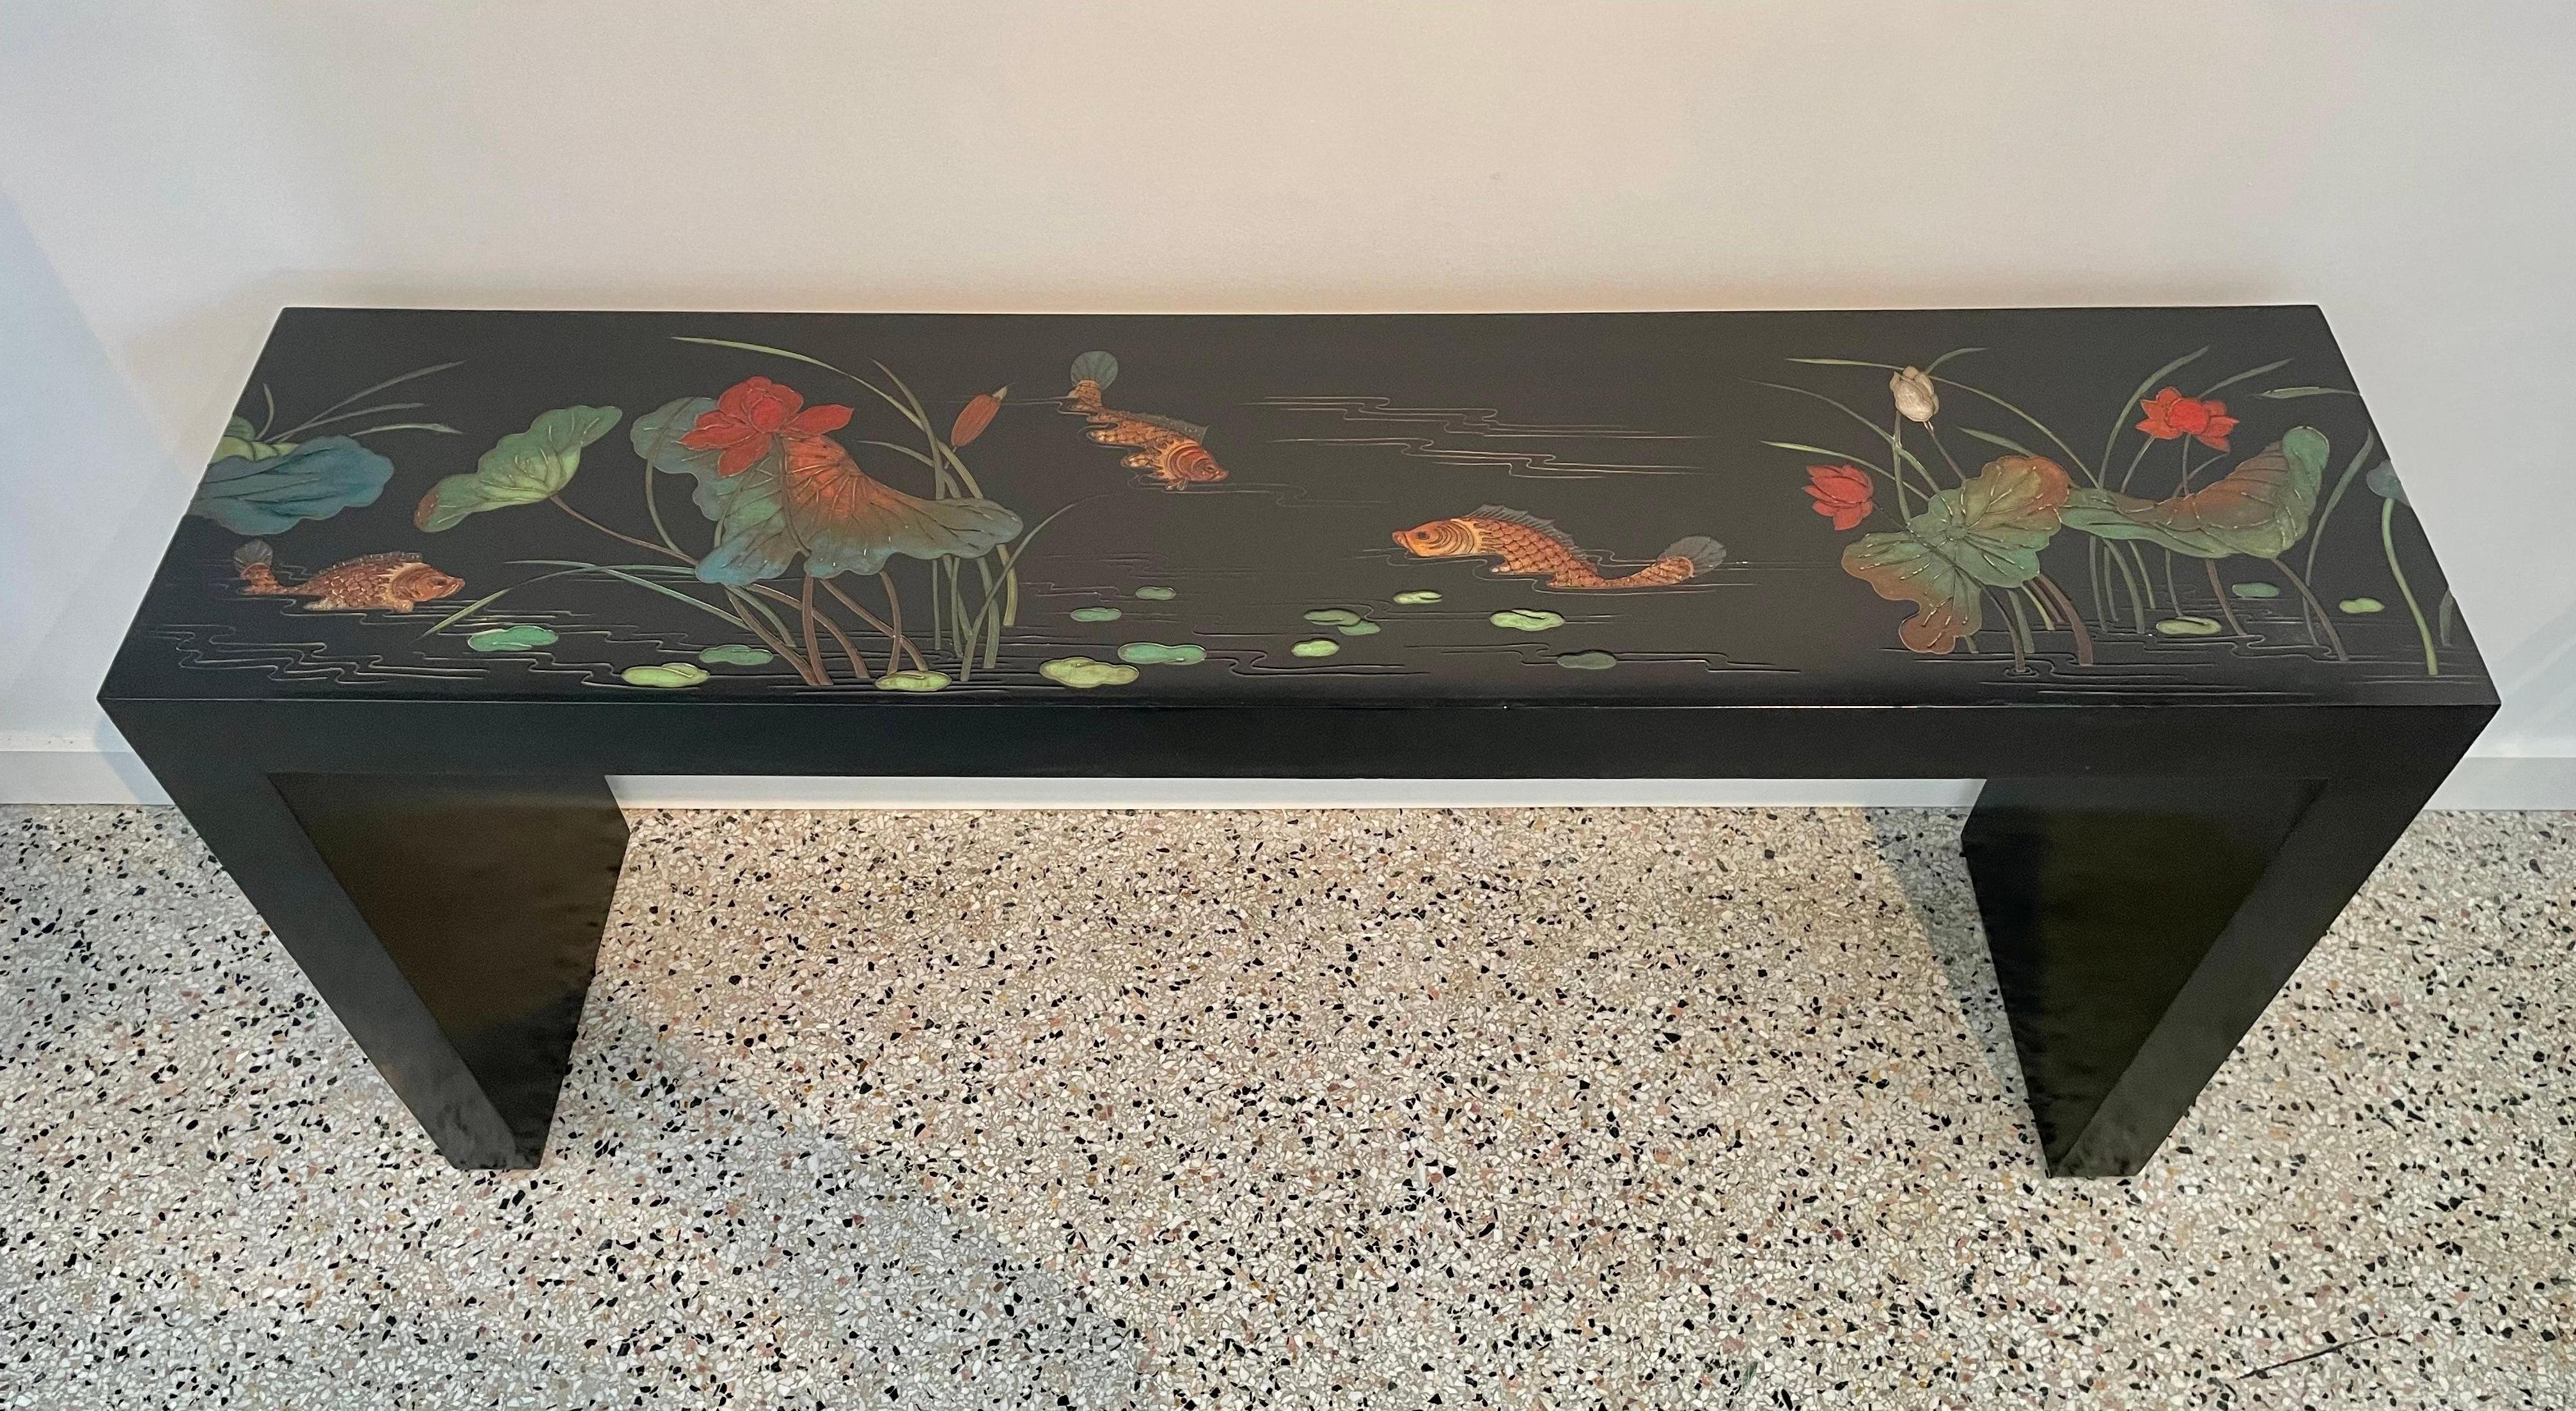 Cette table console chic et élégante emprunte sa forme et ses détails à la période Art déco de Hong Kong.  La pièce est détaillée dans un style de panneau coromandel avec un cadre laqué noir avec des fleurs stylisées et des poissons koï. 

